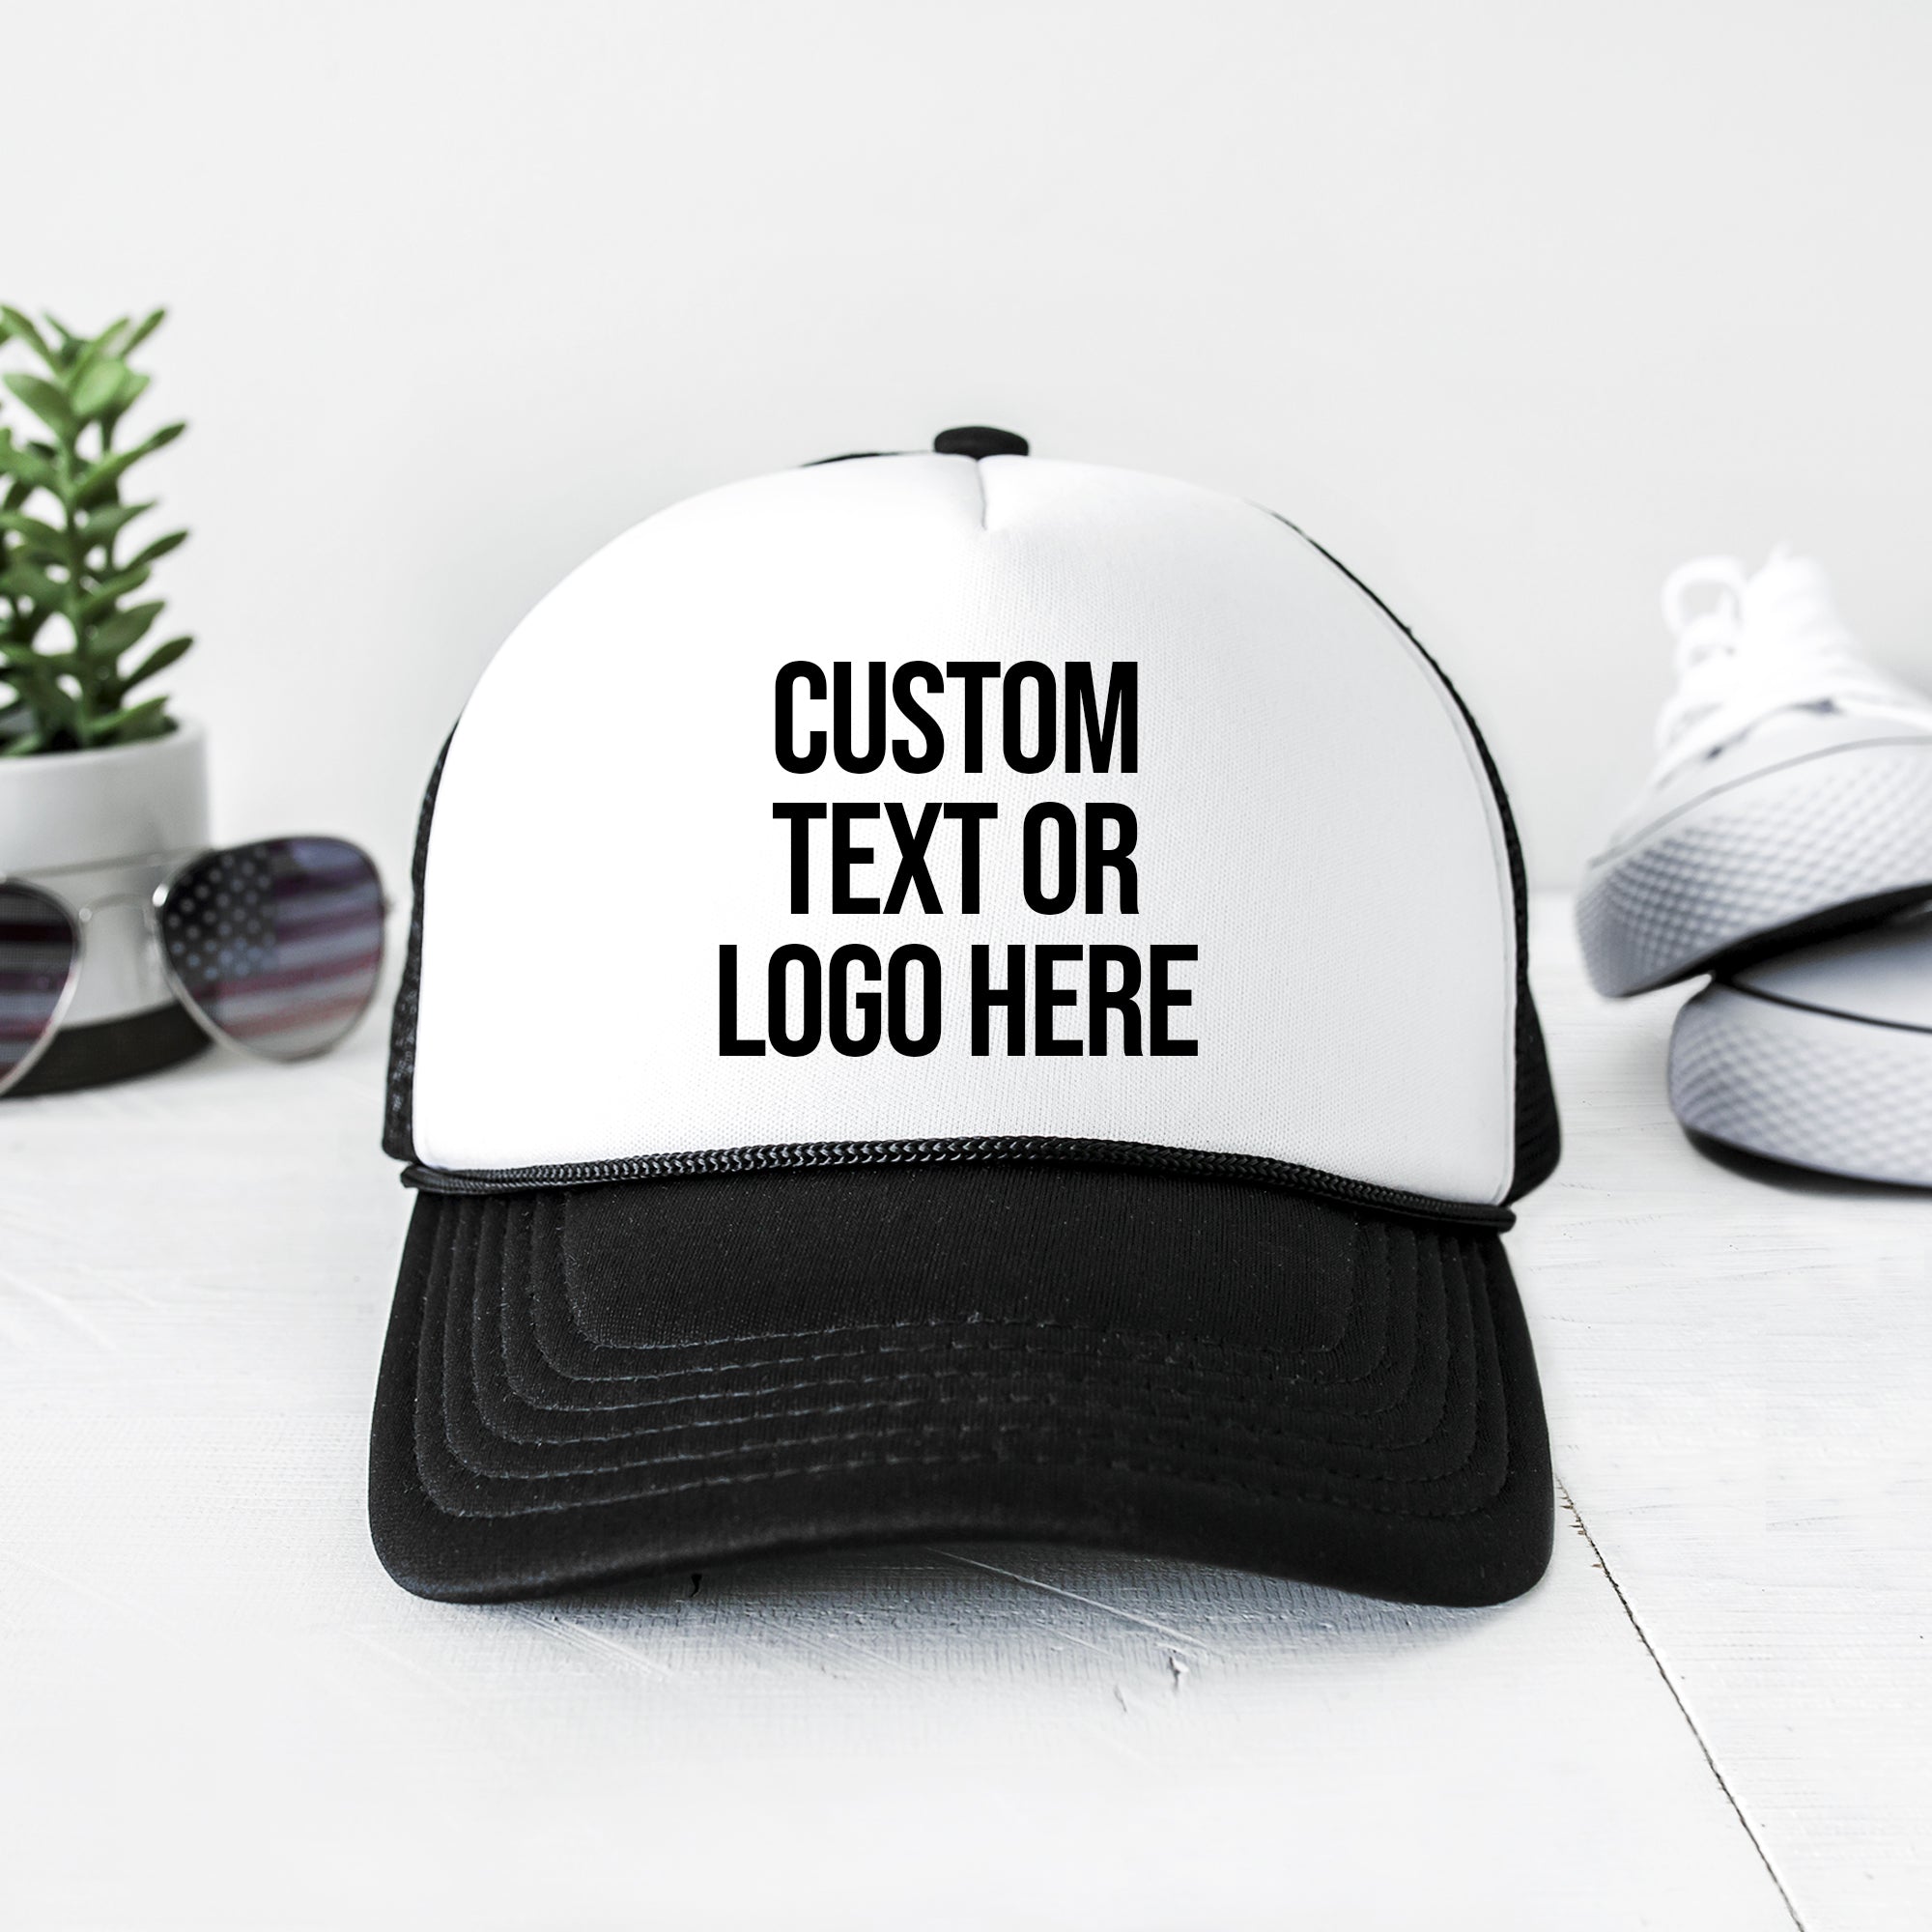 Personalized Trucker Hats